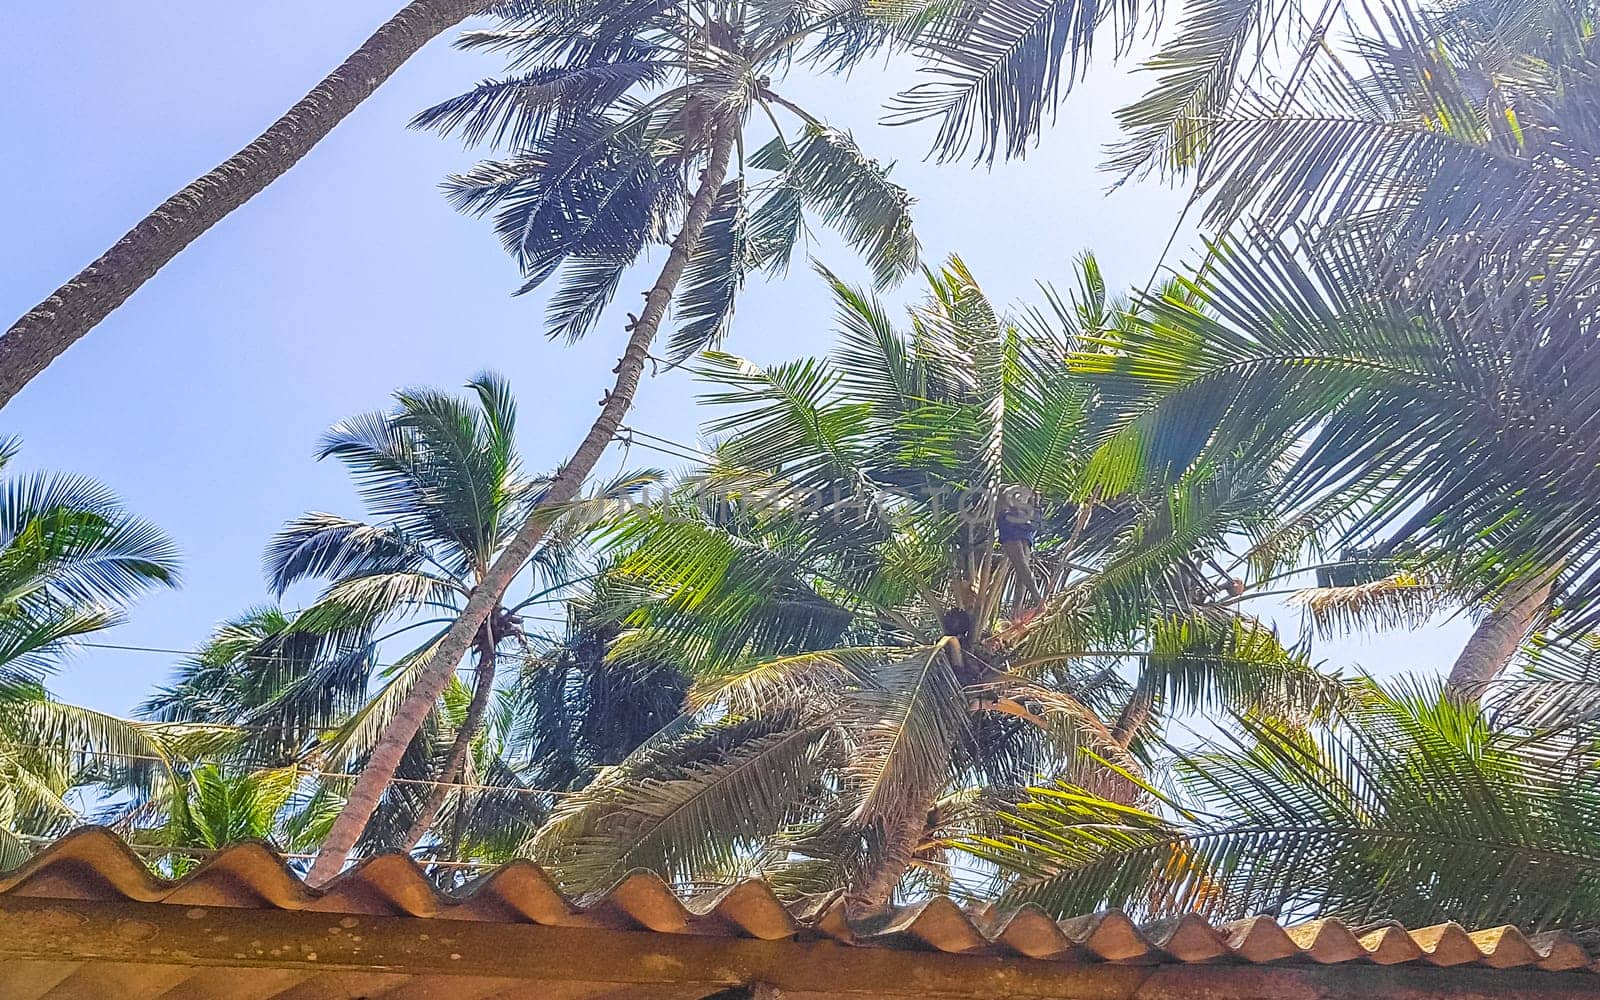 Man climbs a palm tree to harvest coconuts Sri Lanka. by Arkadij